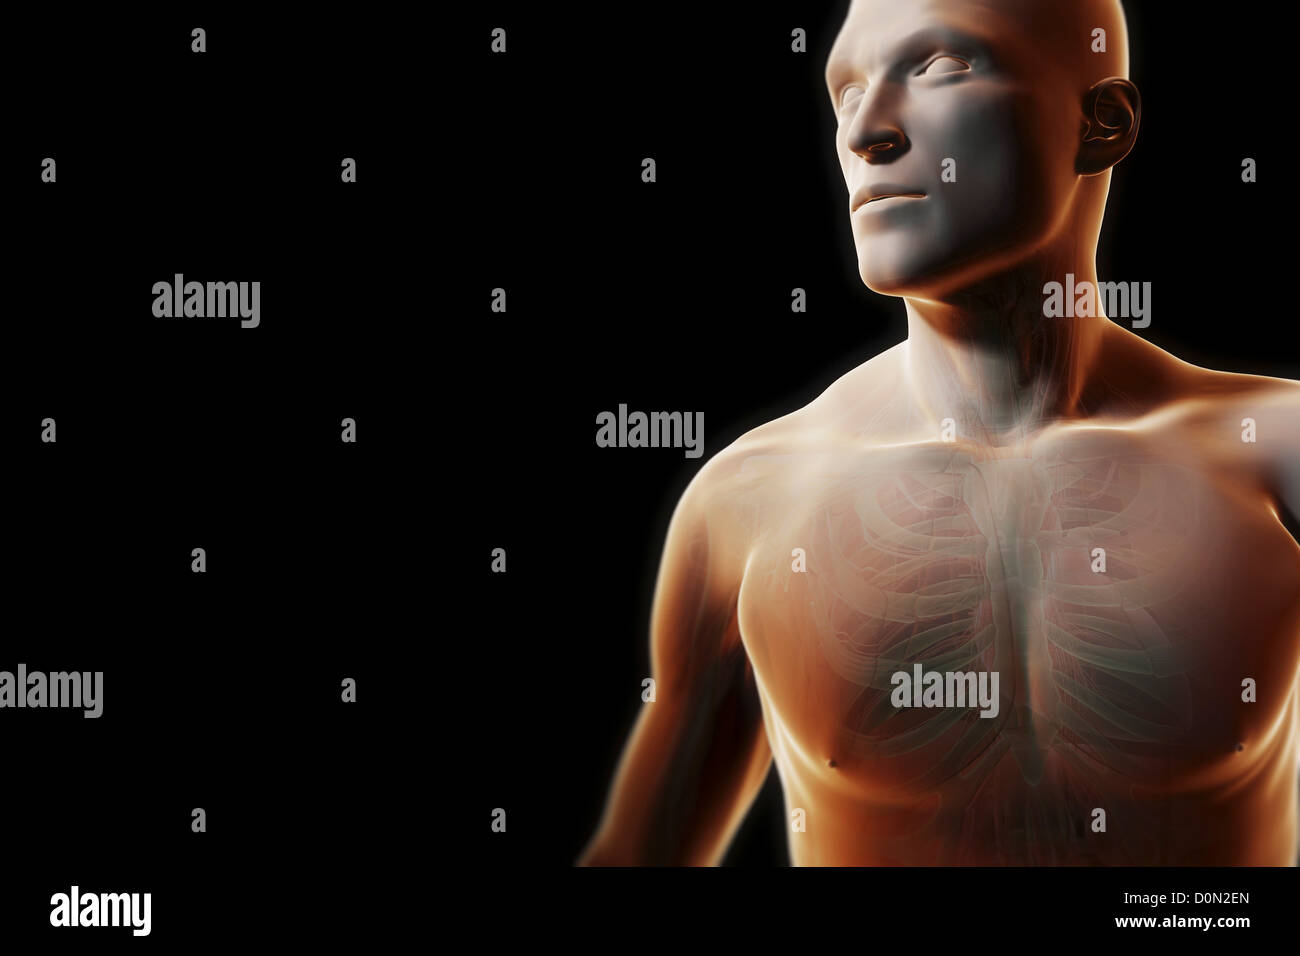 Vue de face figure masculine avec peau transparente partiellement révélant l'anatomie interne de la poitrine. Banque D'Images